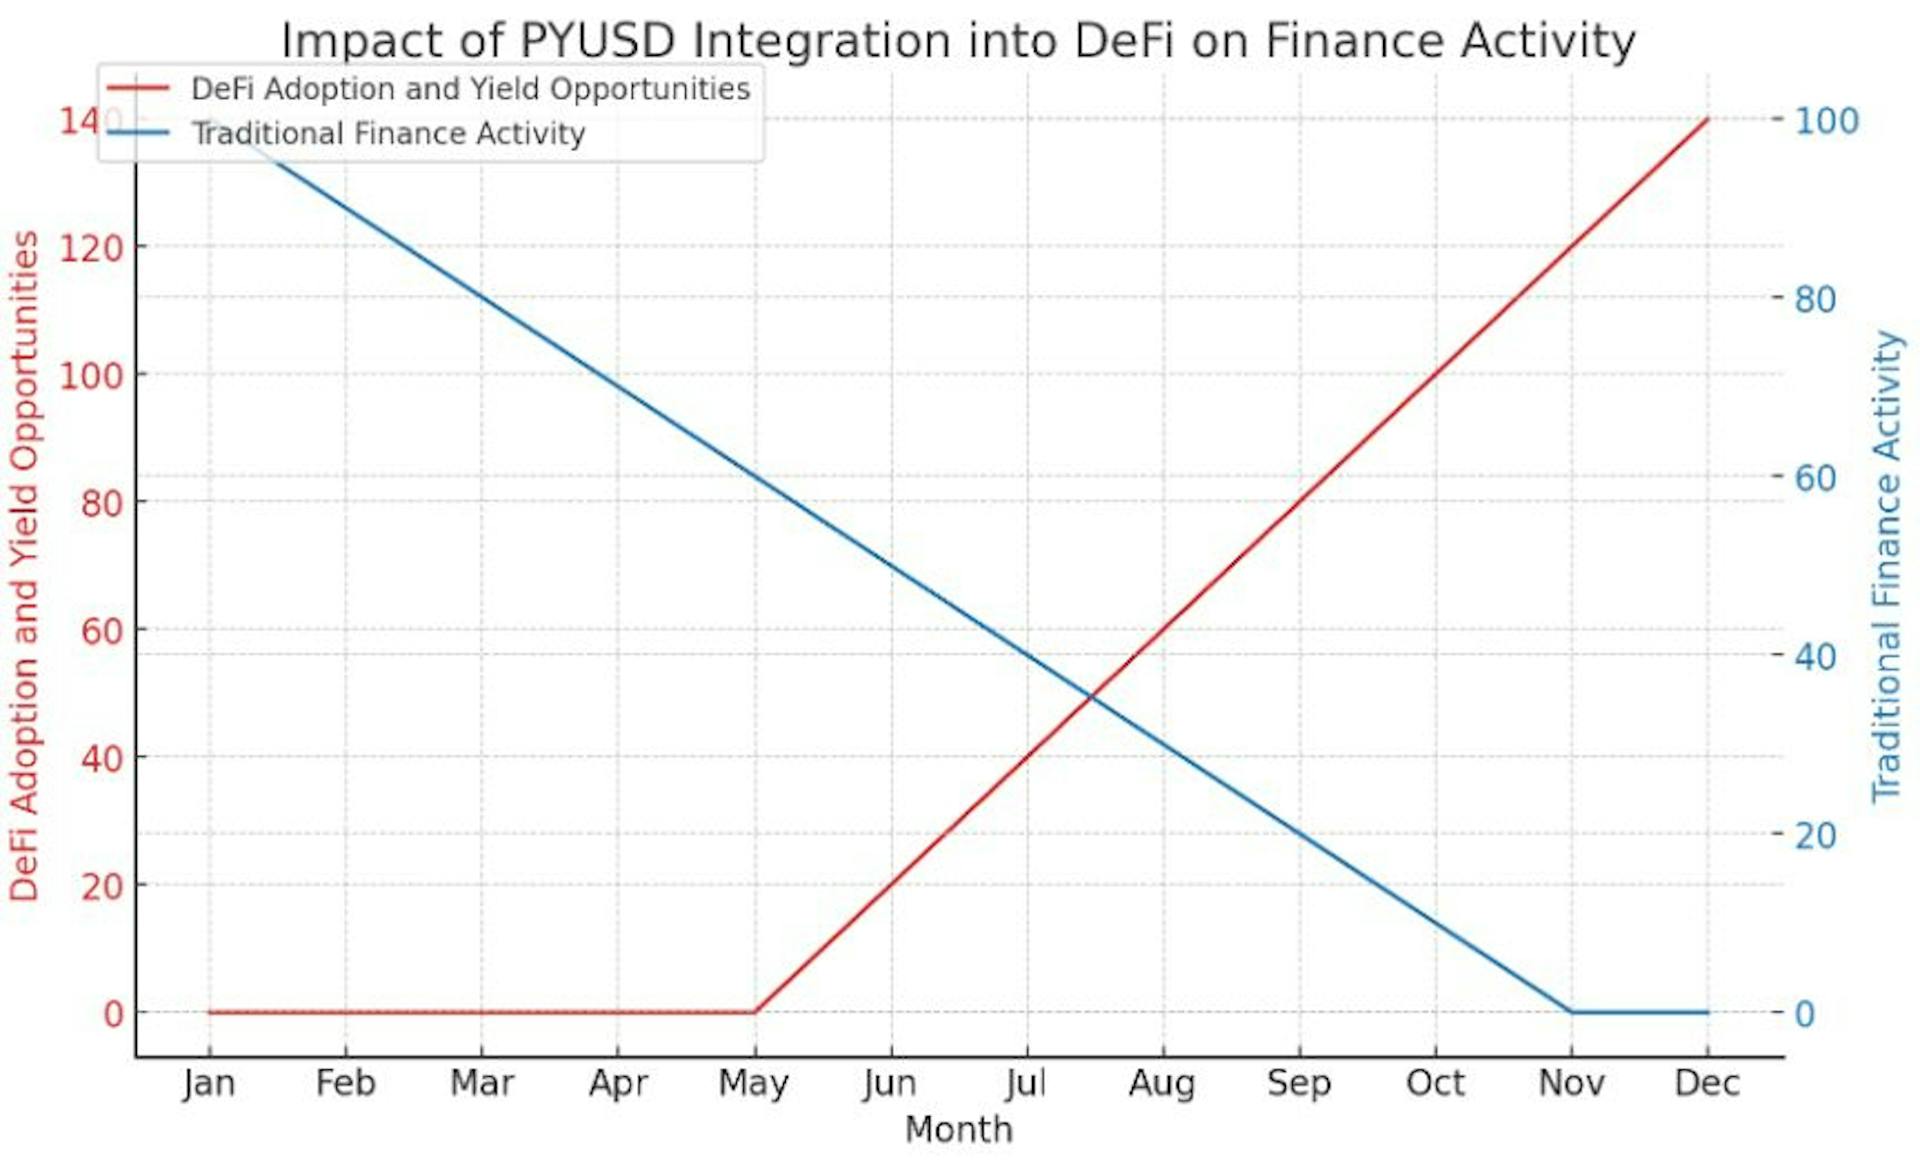 このグラフは、DeFi エコシステムへの PYUSD の統合による仮想的な影響を視覚化し、時間の経過とともに DeFi の導入と収益機会が大幅に増加することを示しています。